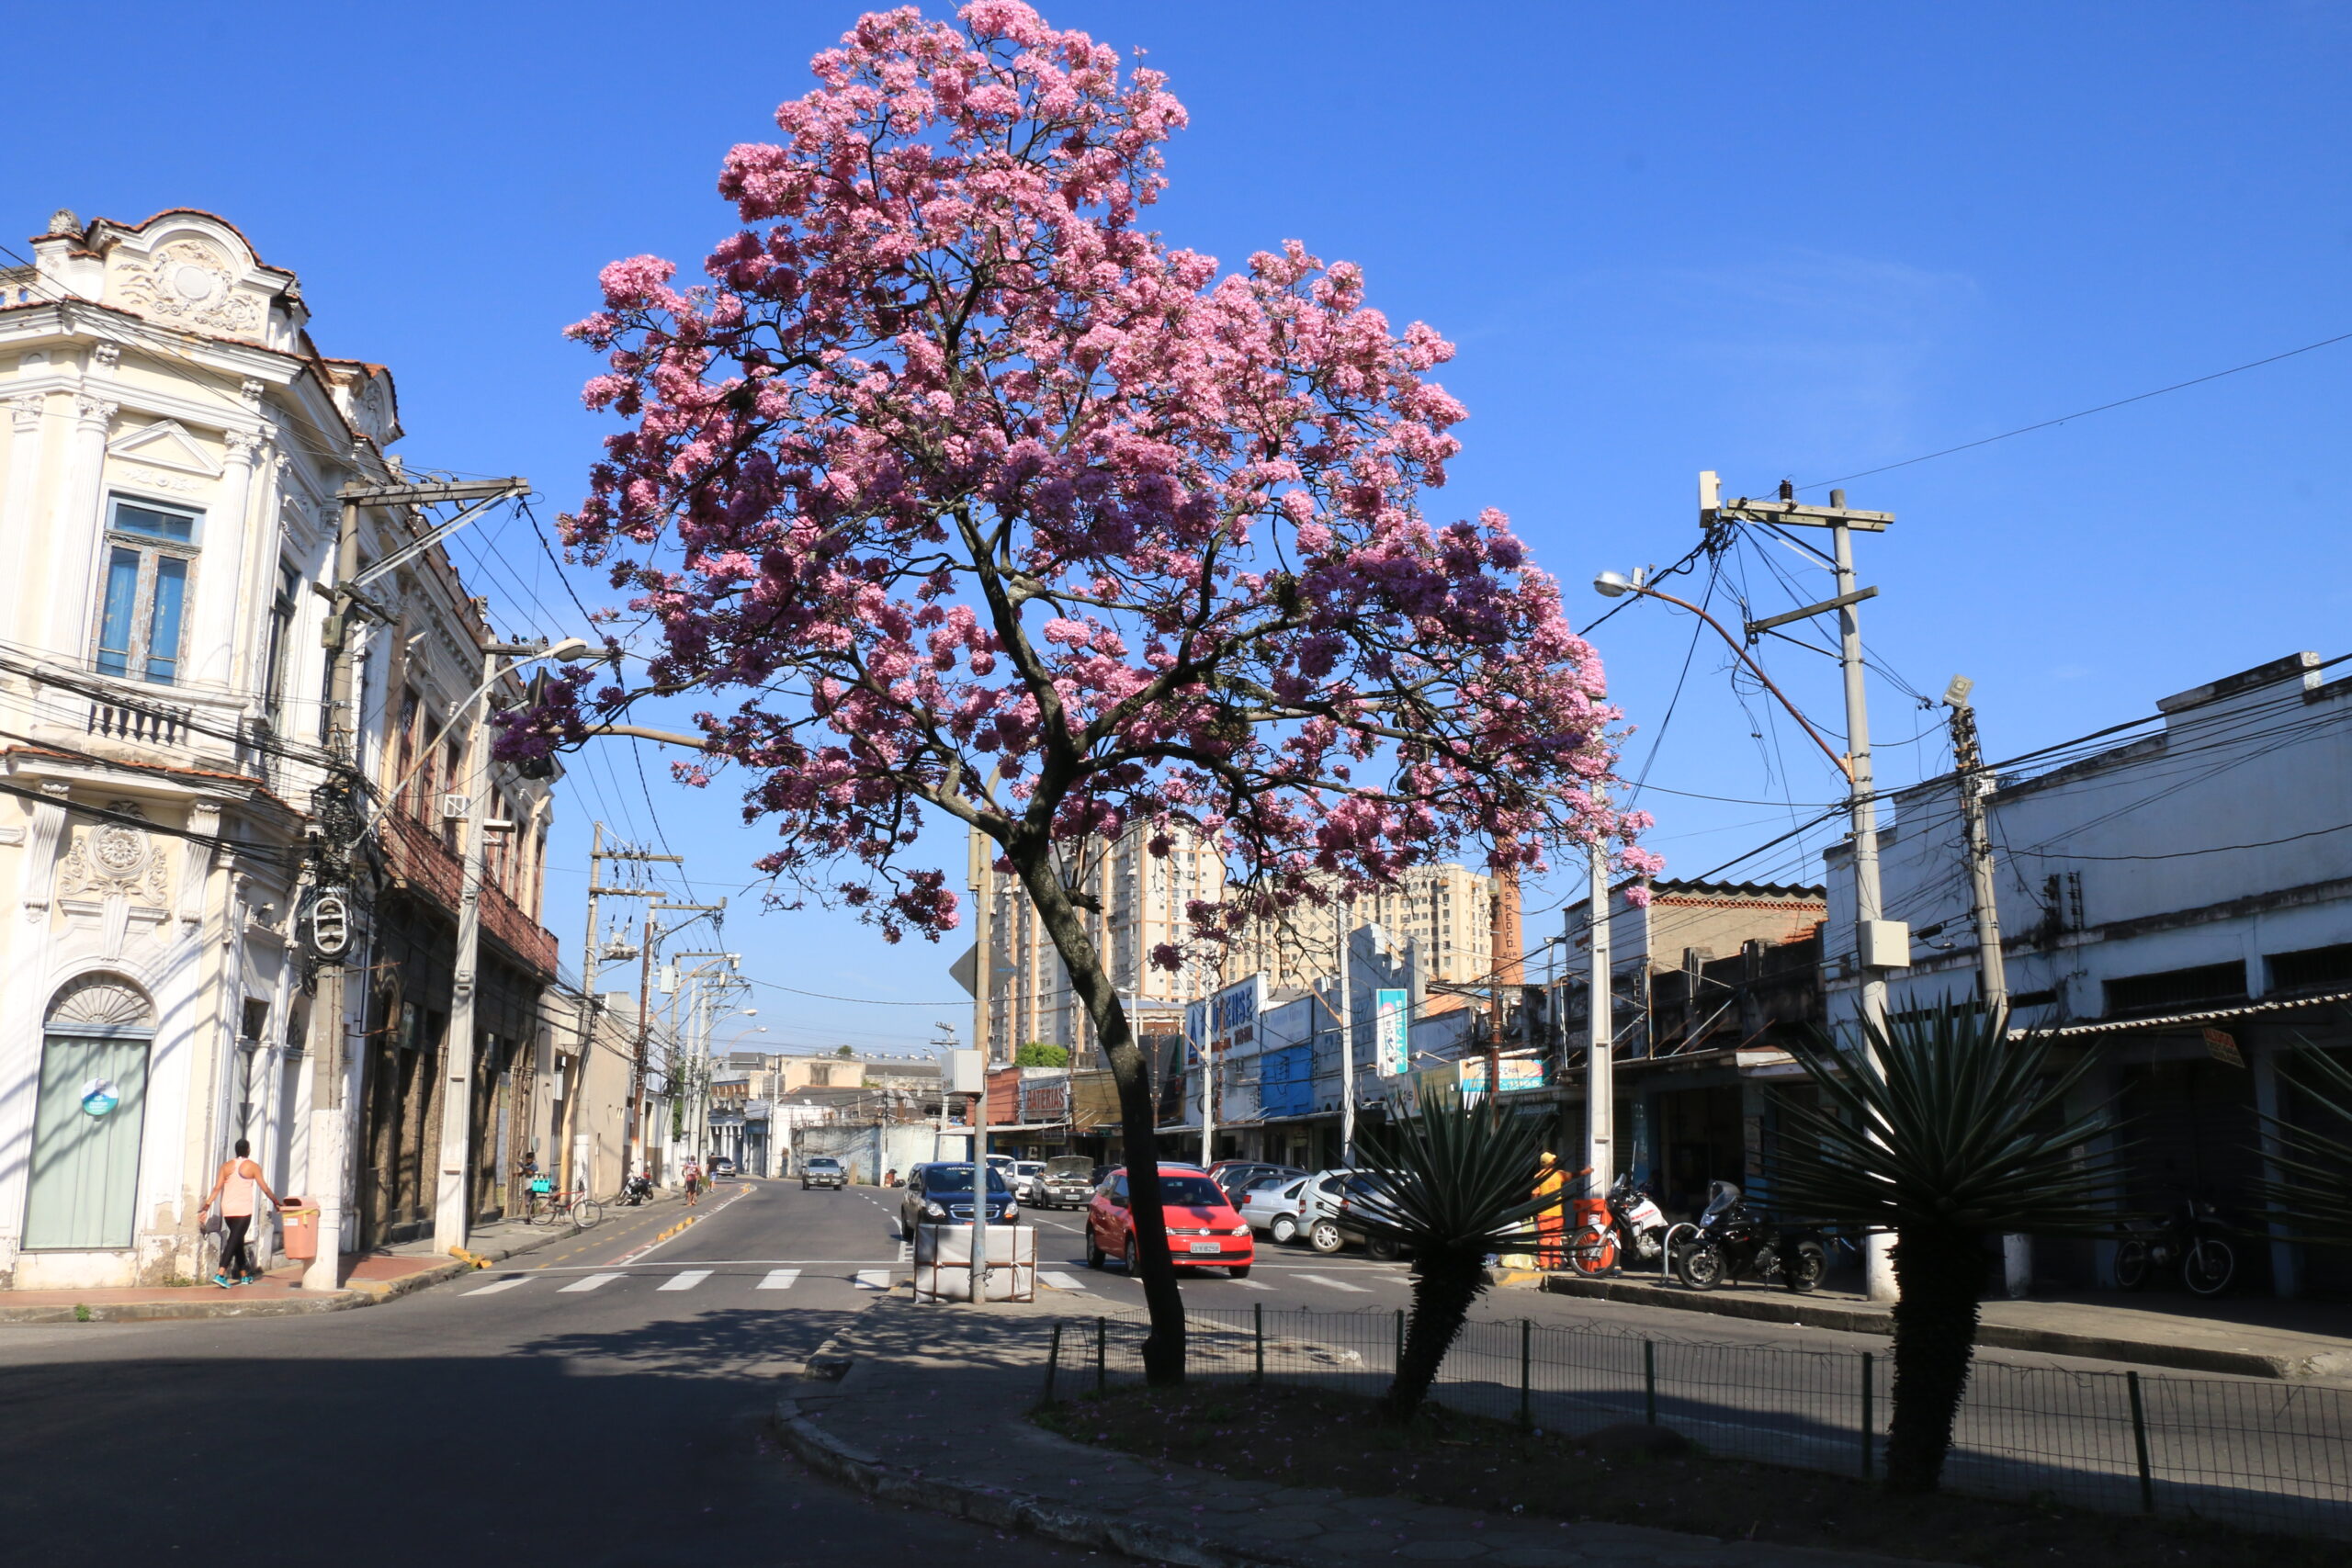 Niterói ganha selo internacional de “Cidade Árvore do Mundo”